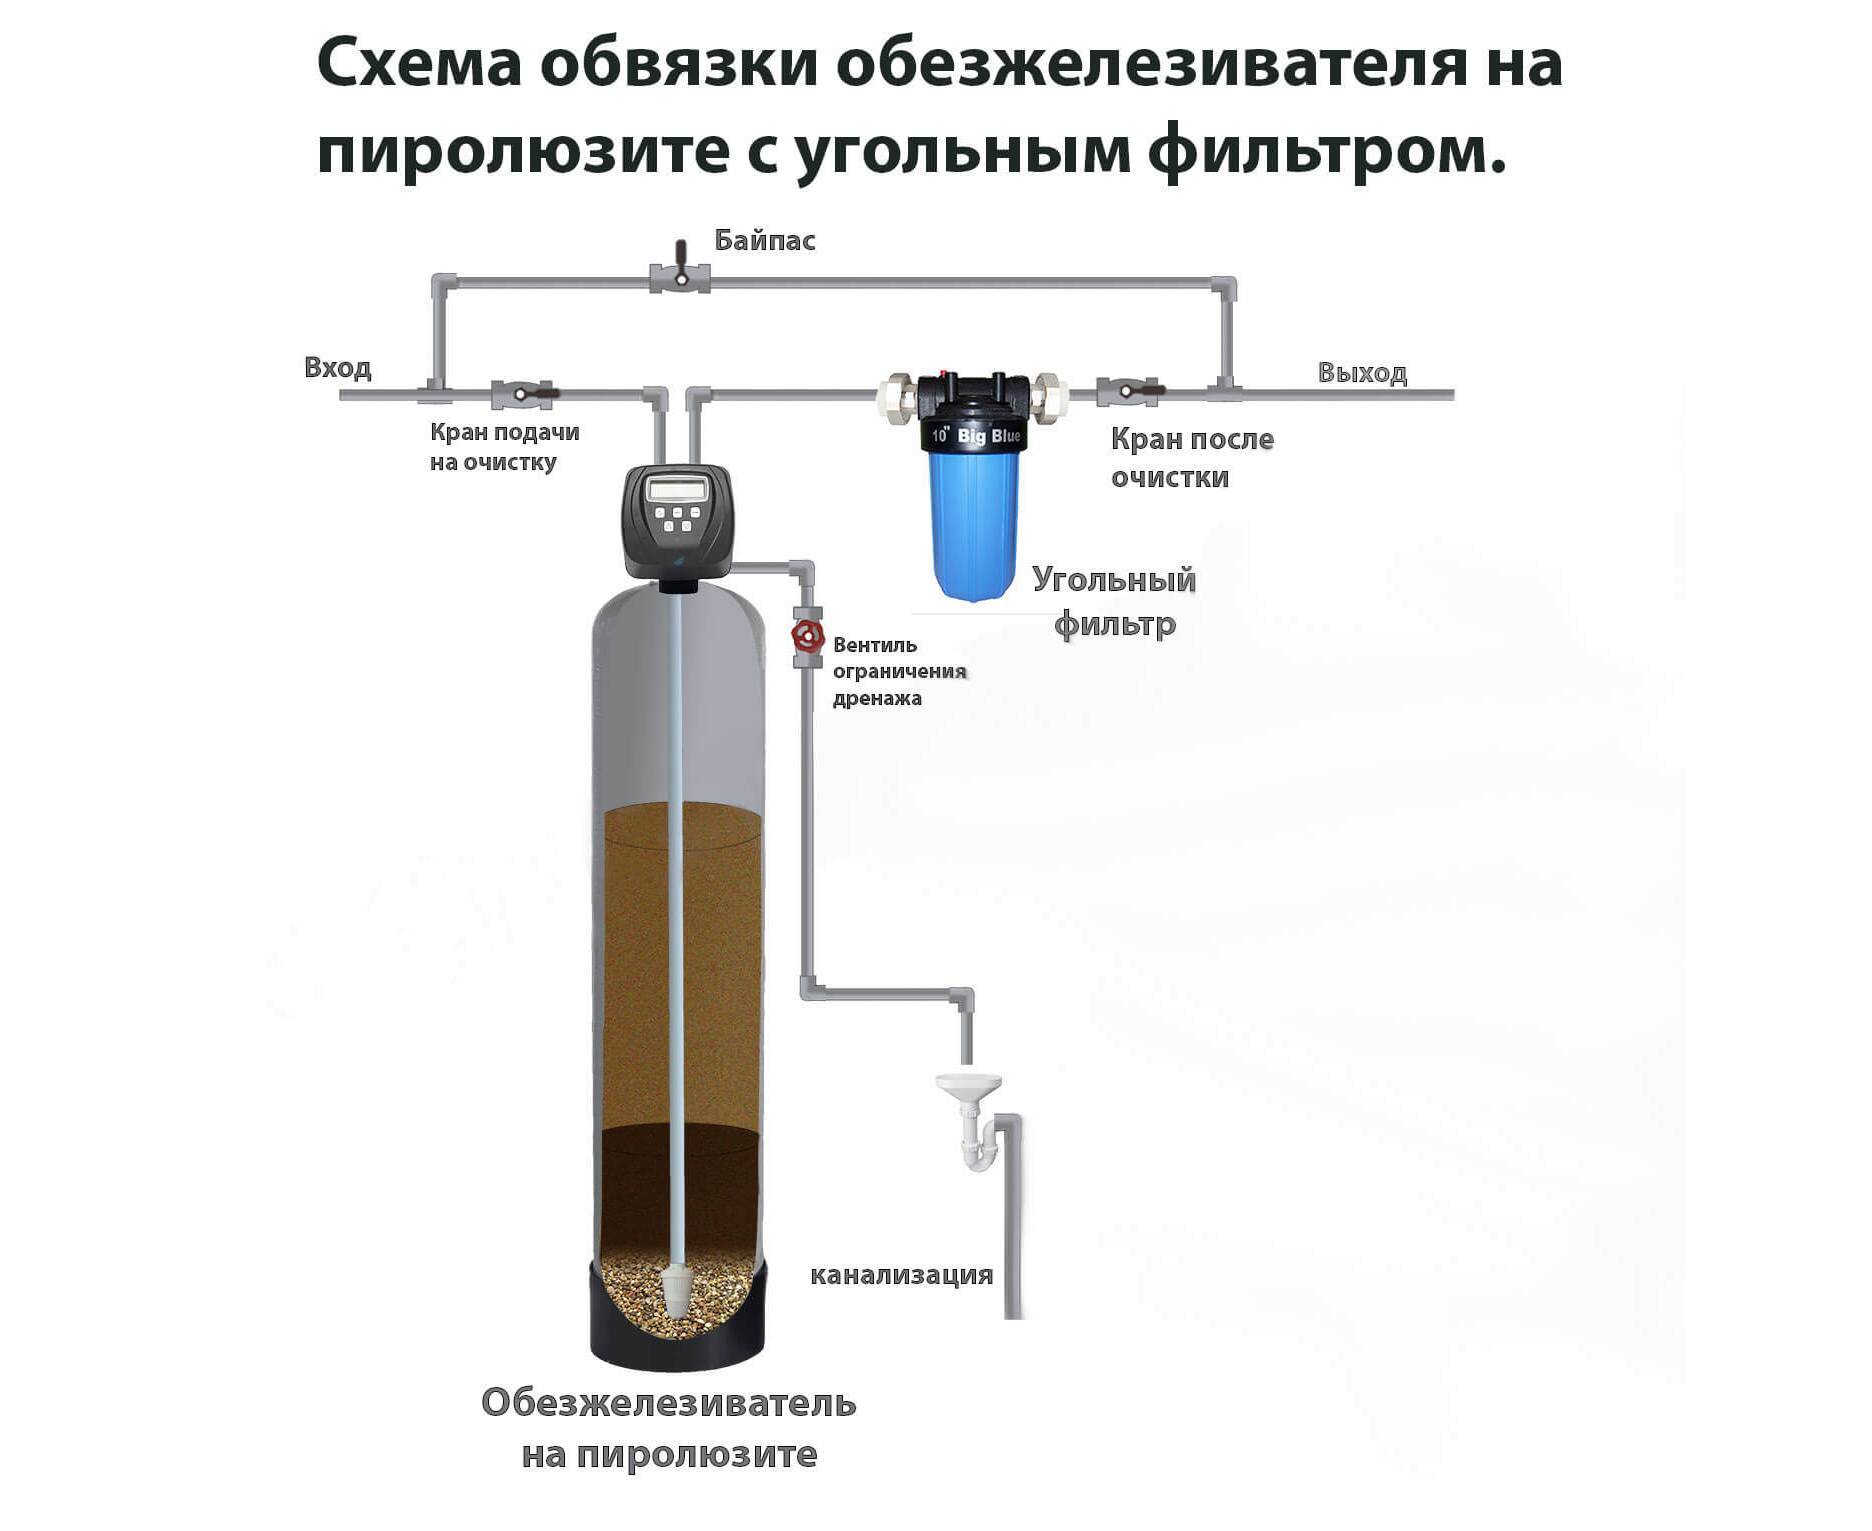 Фильтр для воды с сероводородом для безопасности семьи